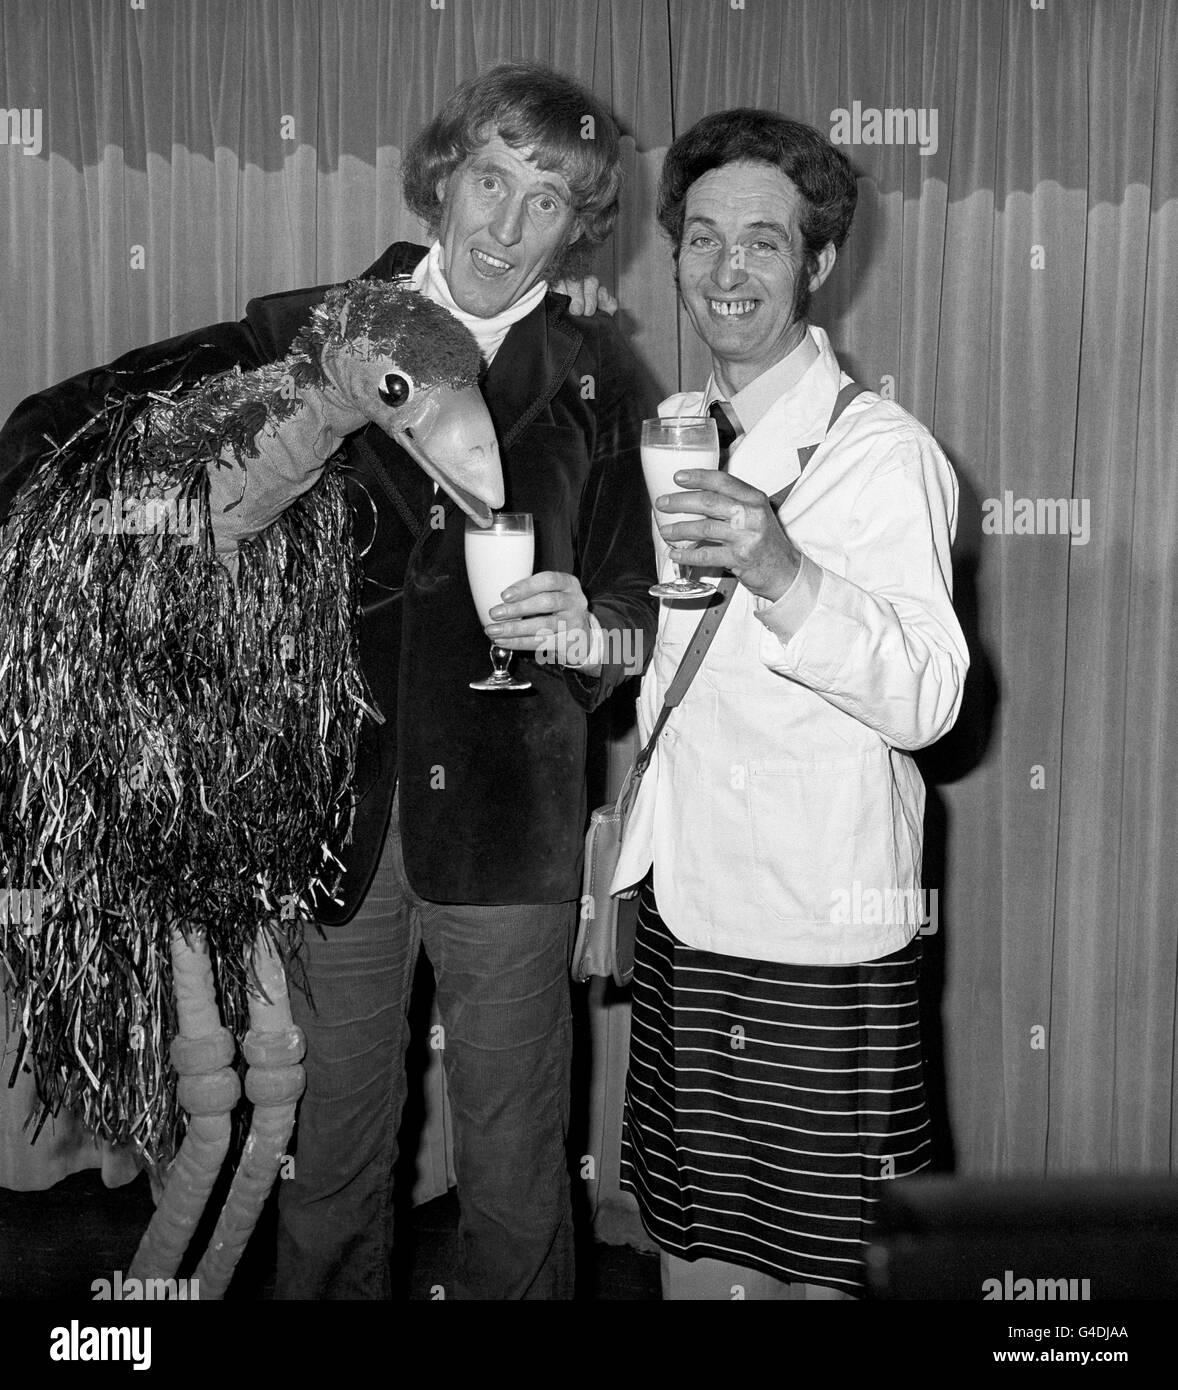 Roy Crane, a destra, un ex dirigente assicurativo che ha rinunciato alla vita in città per un giro di latte, è Unito da Rod Hull ed EMU, quando è diventato la personalità Milkman per 1977. Foto Stock